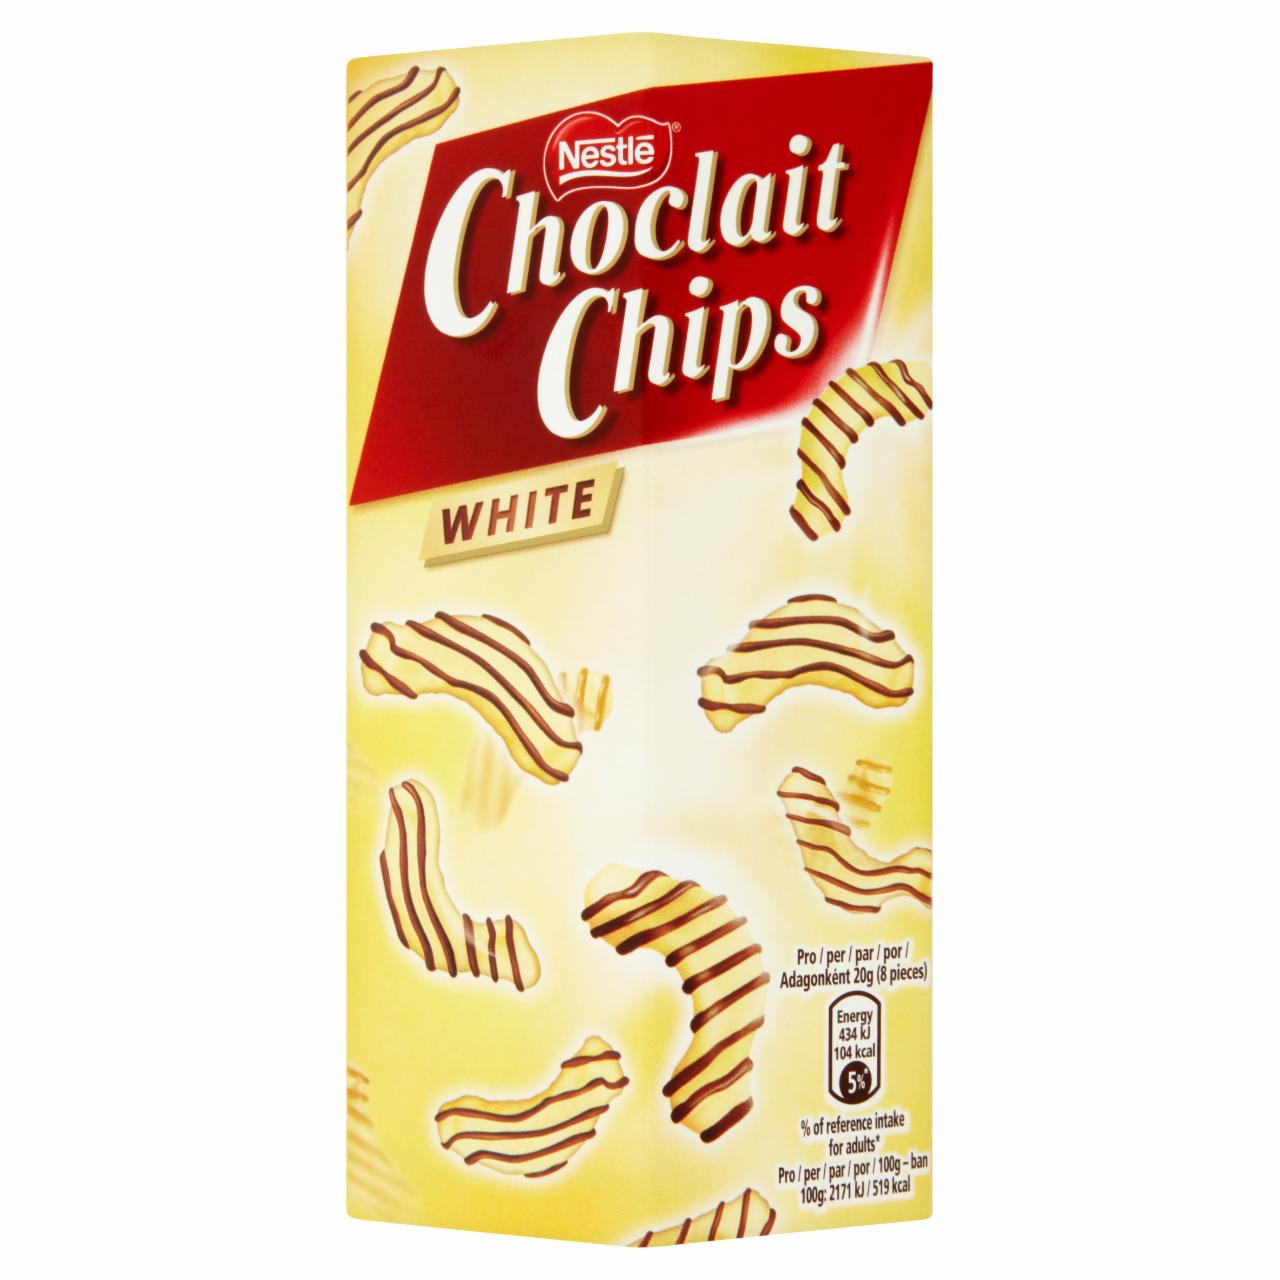 Képek - Nestlé Choclait Chips White mandulaízű gabonapehely fehér csokoládéval mártva 125 g